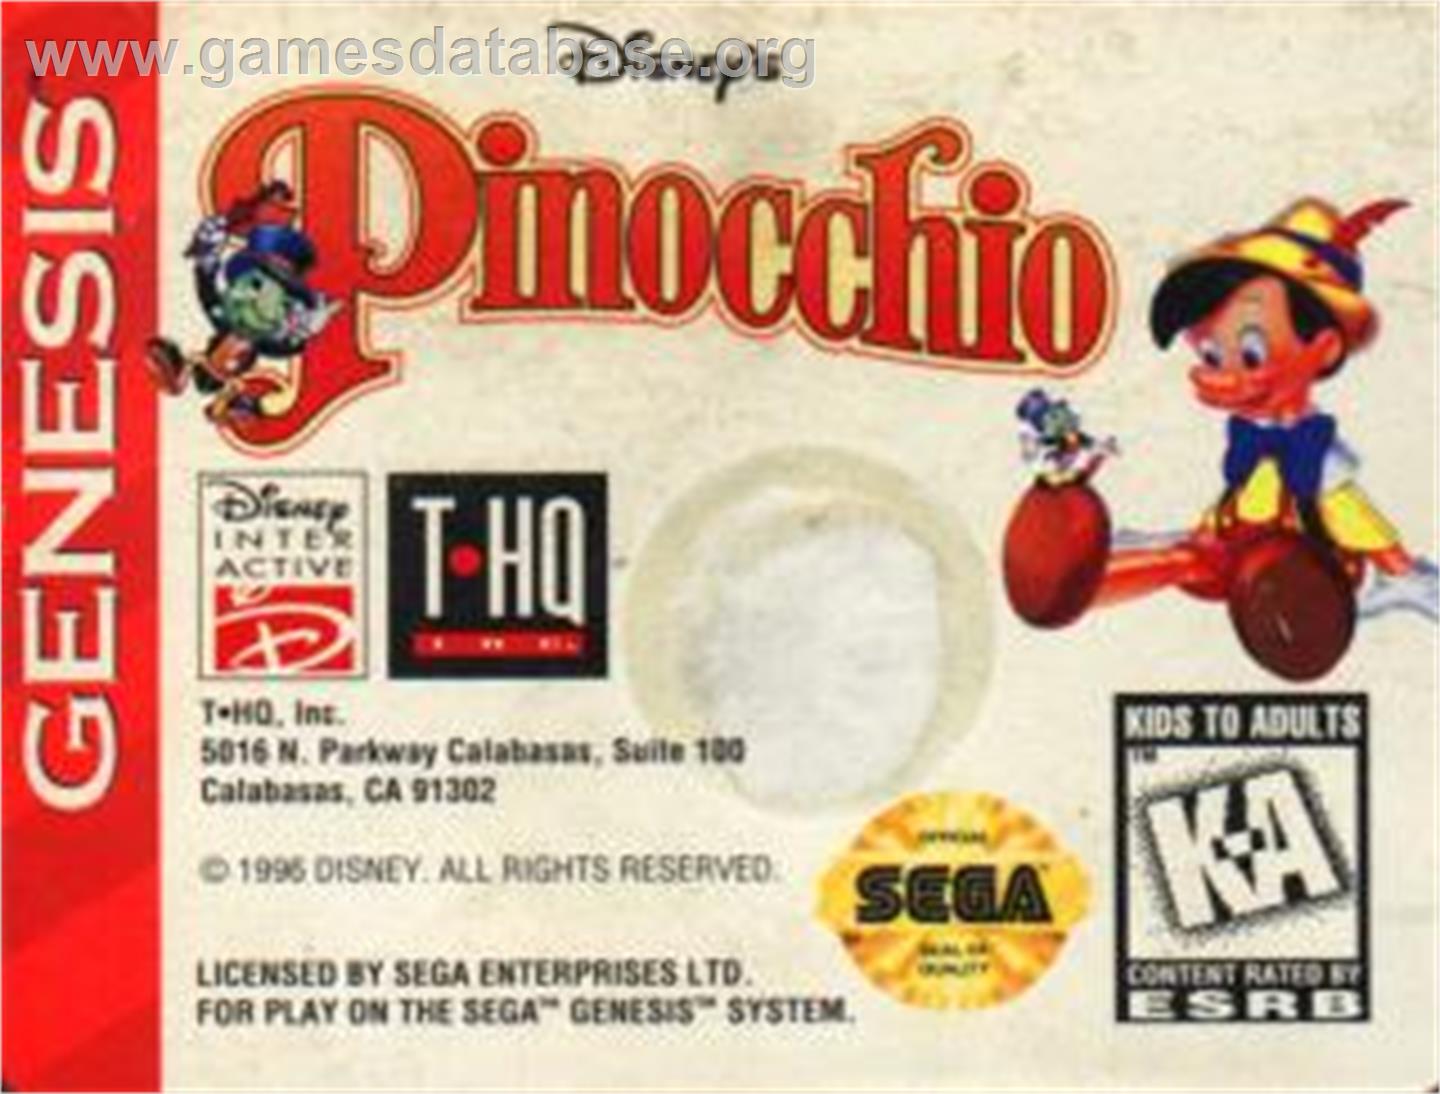 Pinocchio - Sega Nomad - Artwork - Cartridge